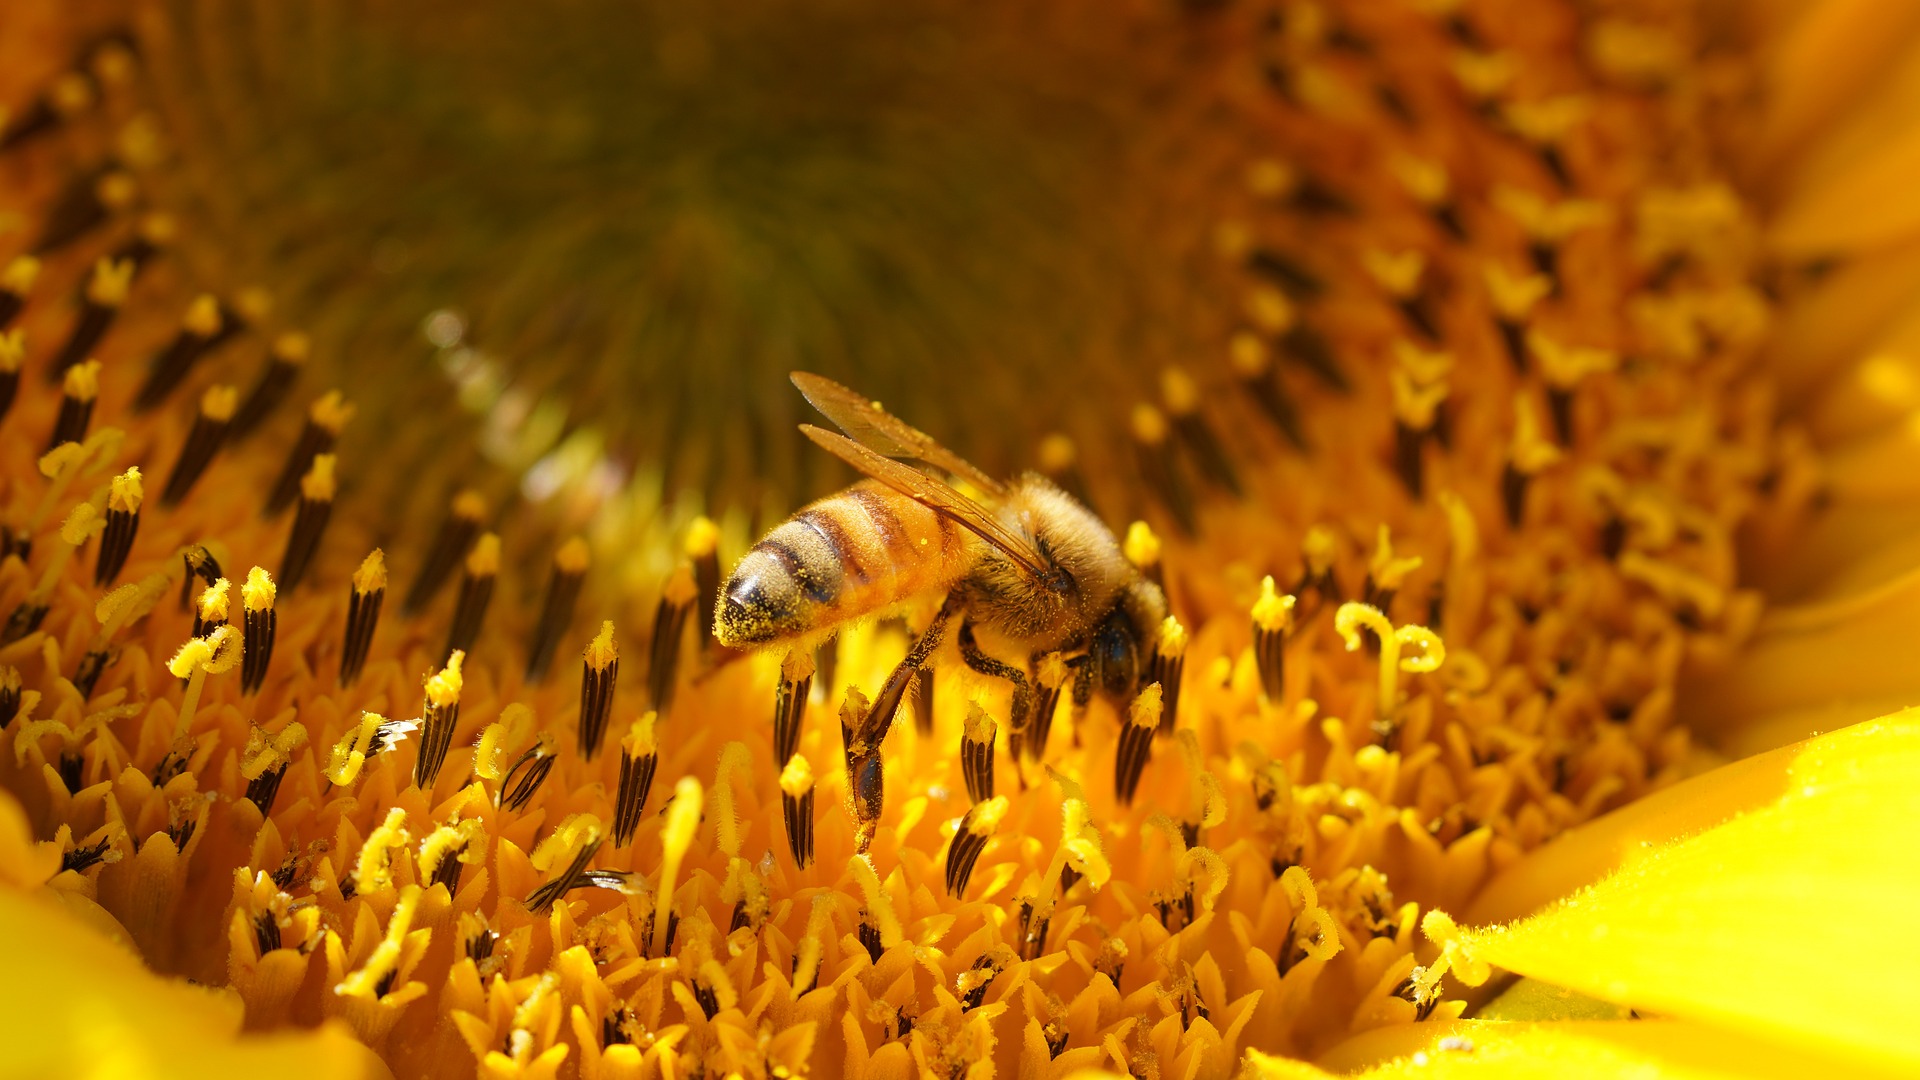 Honingbij op bloem - Myléne via Pixabay